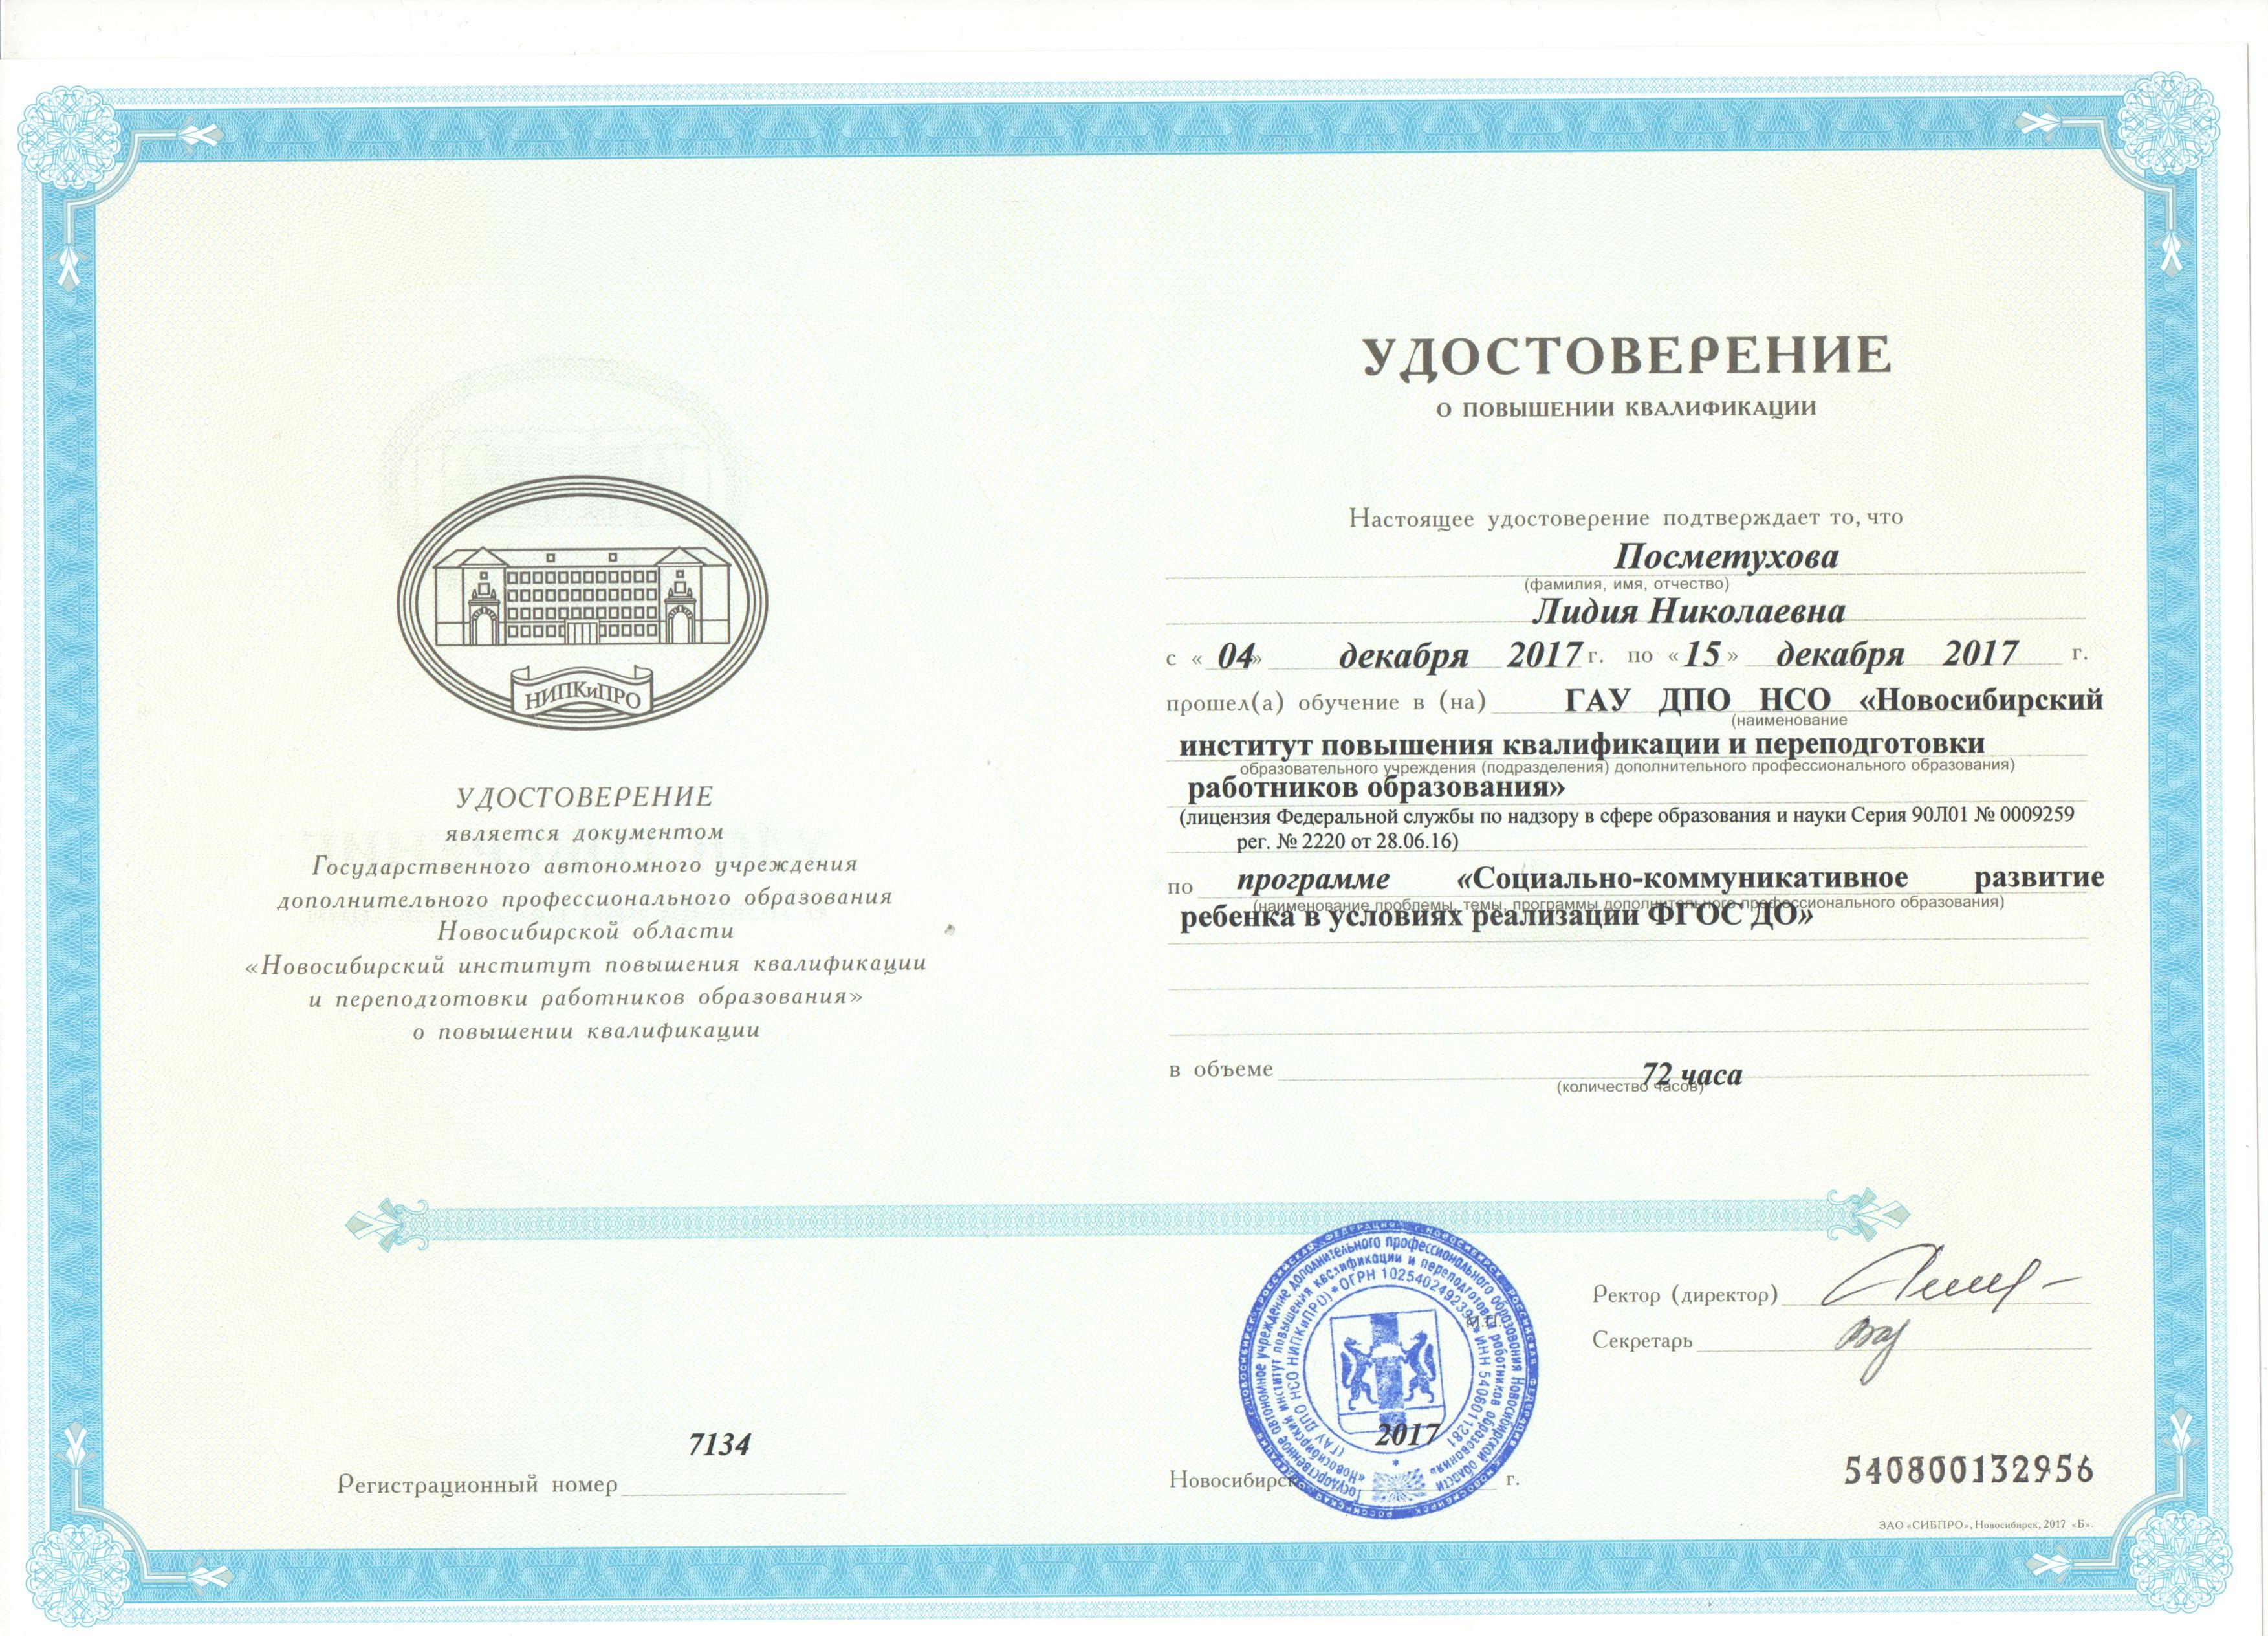 Автономные учреждения новосибирска. Документ удостоверяющий квалификацию. Институт повышения квалификации Новосибирск.